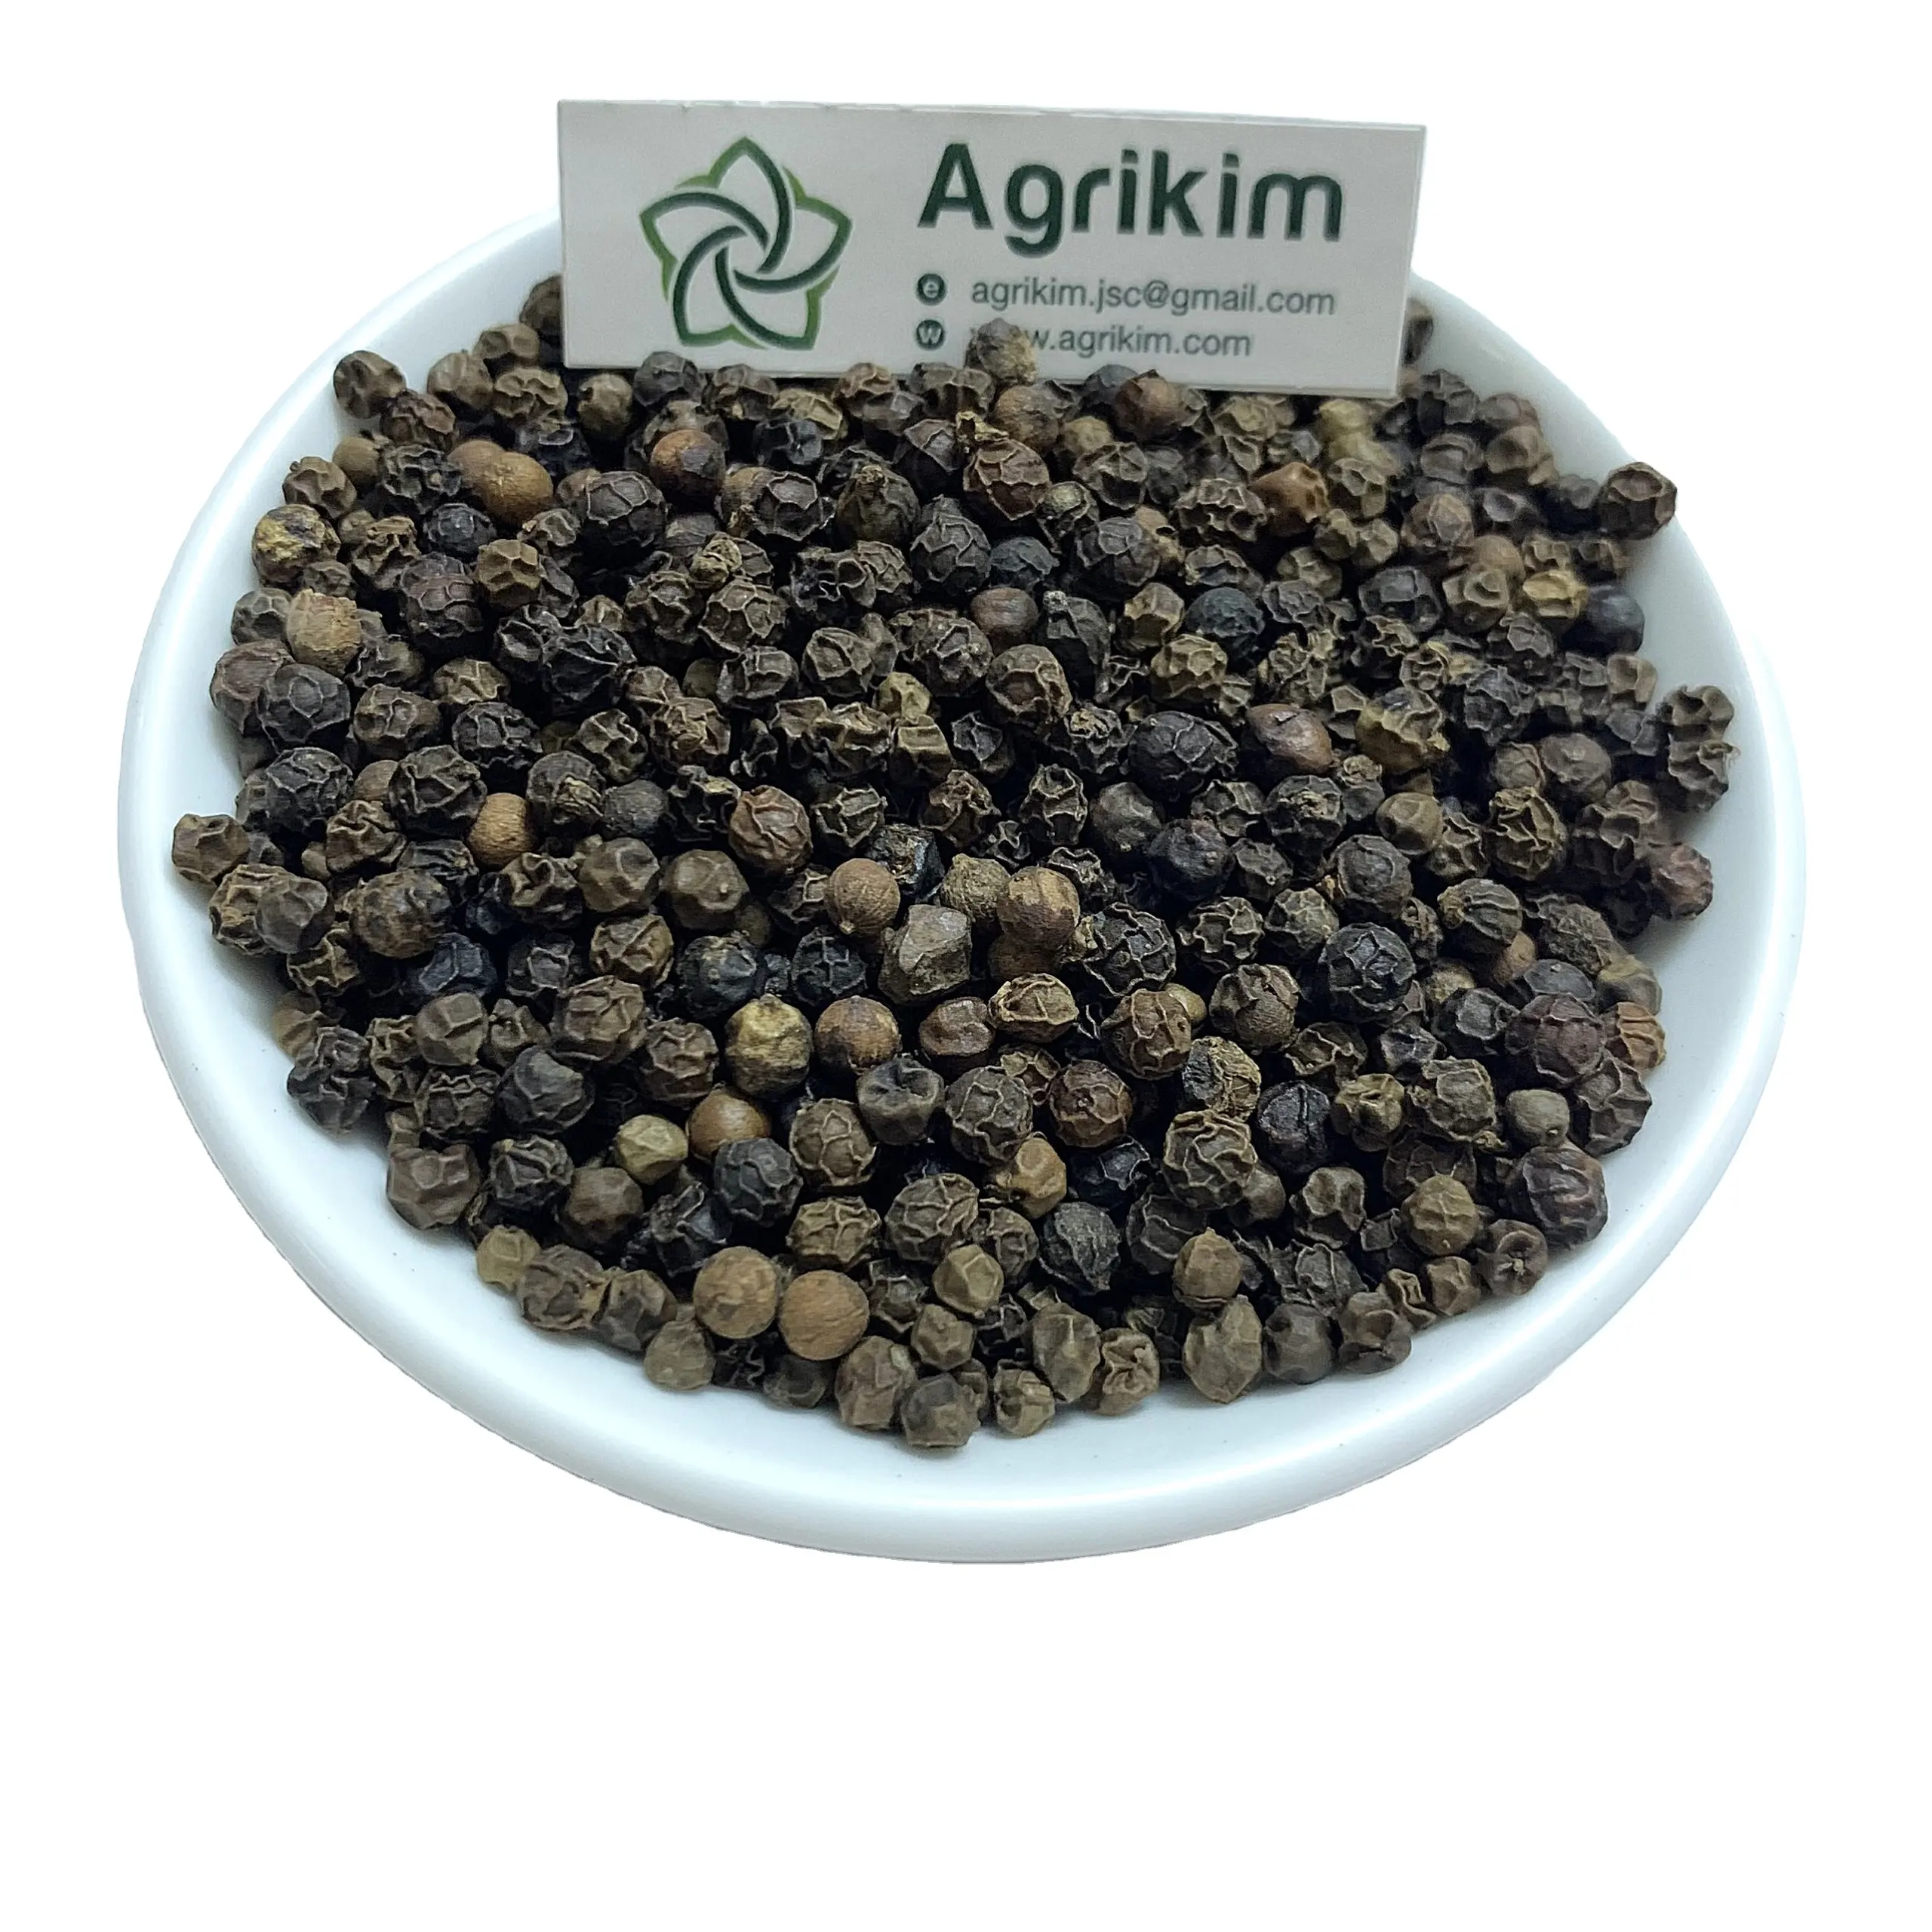 Aromatizante de pimenta preta seca do Vietnã tempero especiarias preço de atacado boa embalagem amostra disponível venda superior alta qualidade